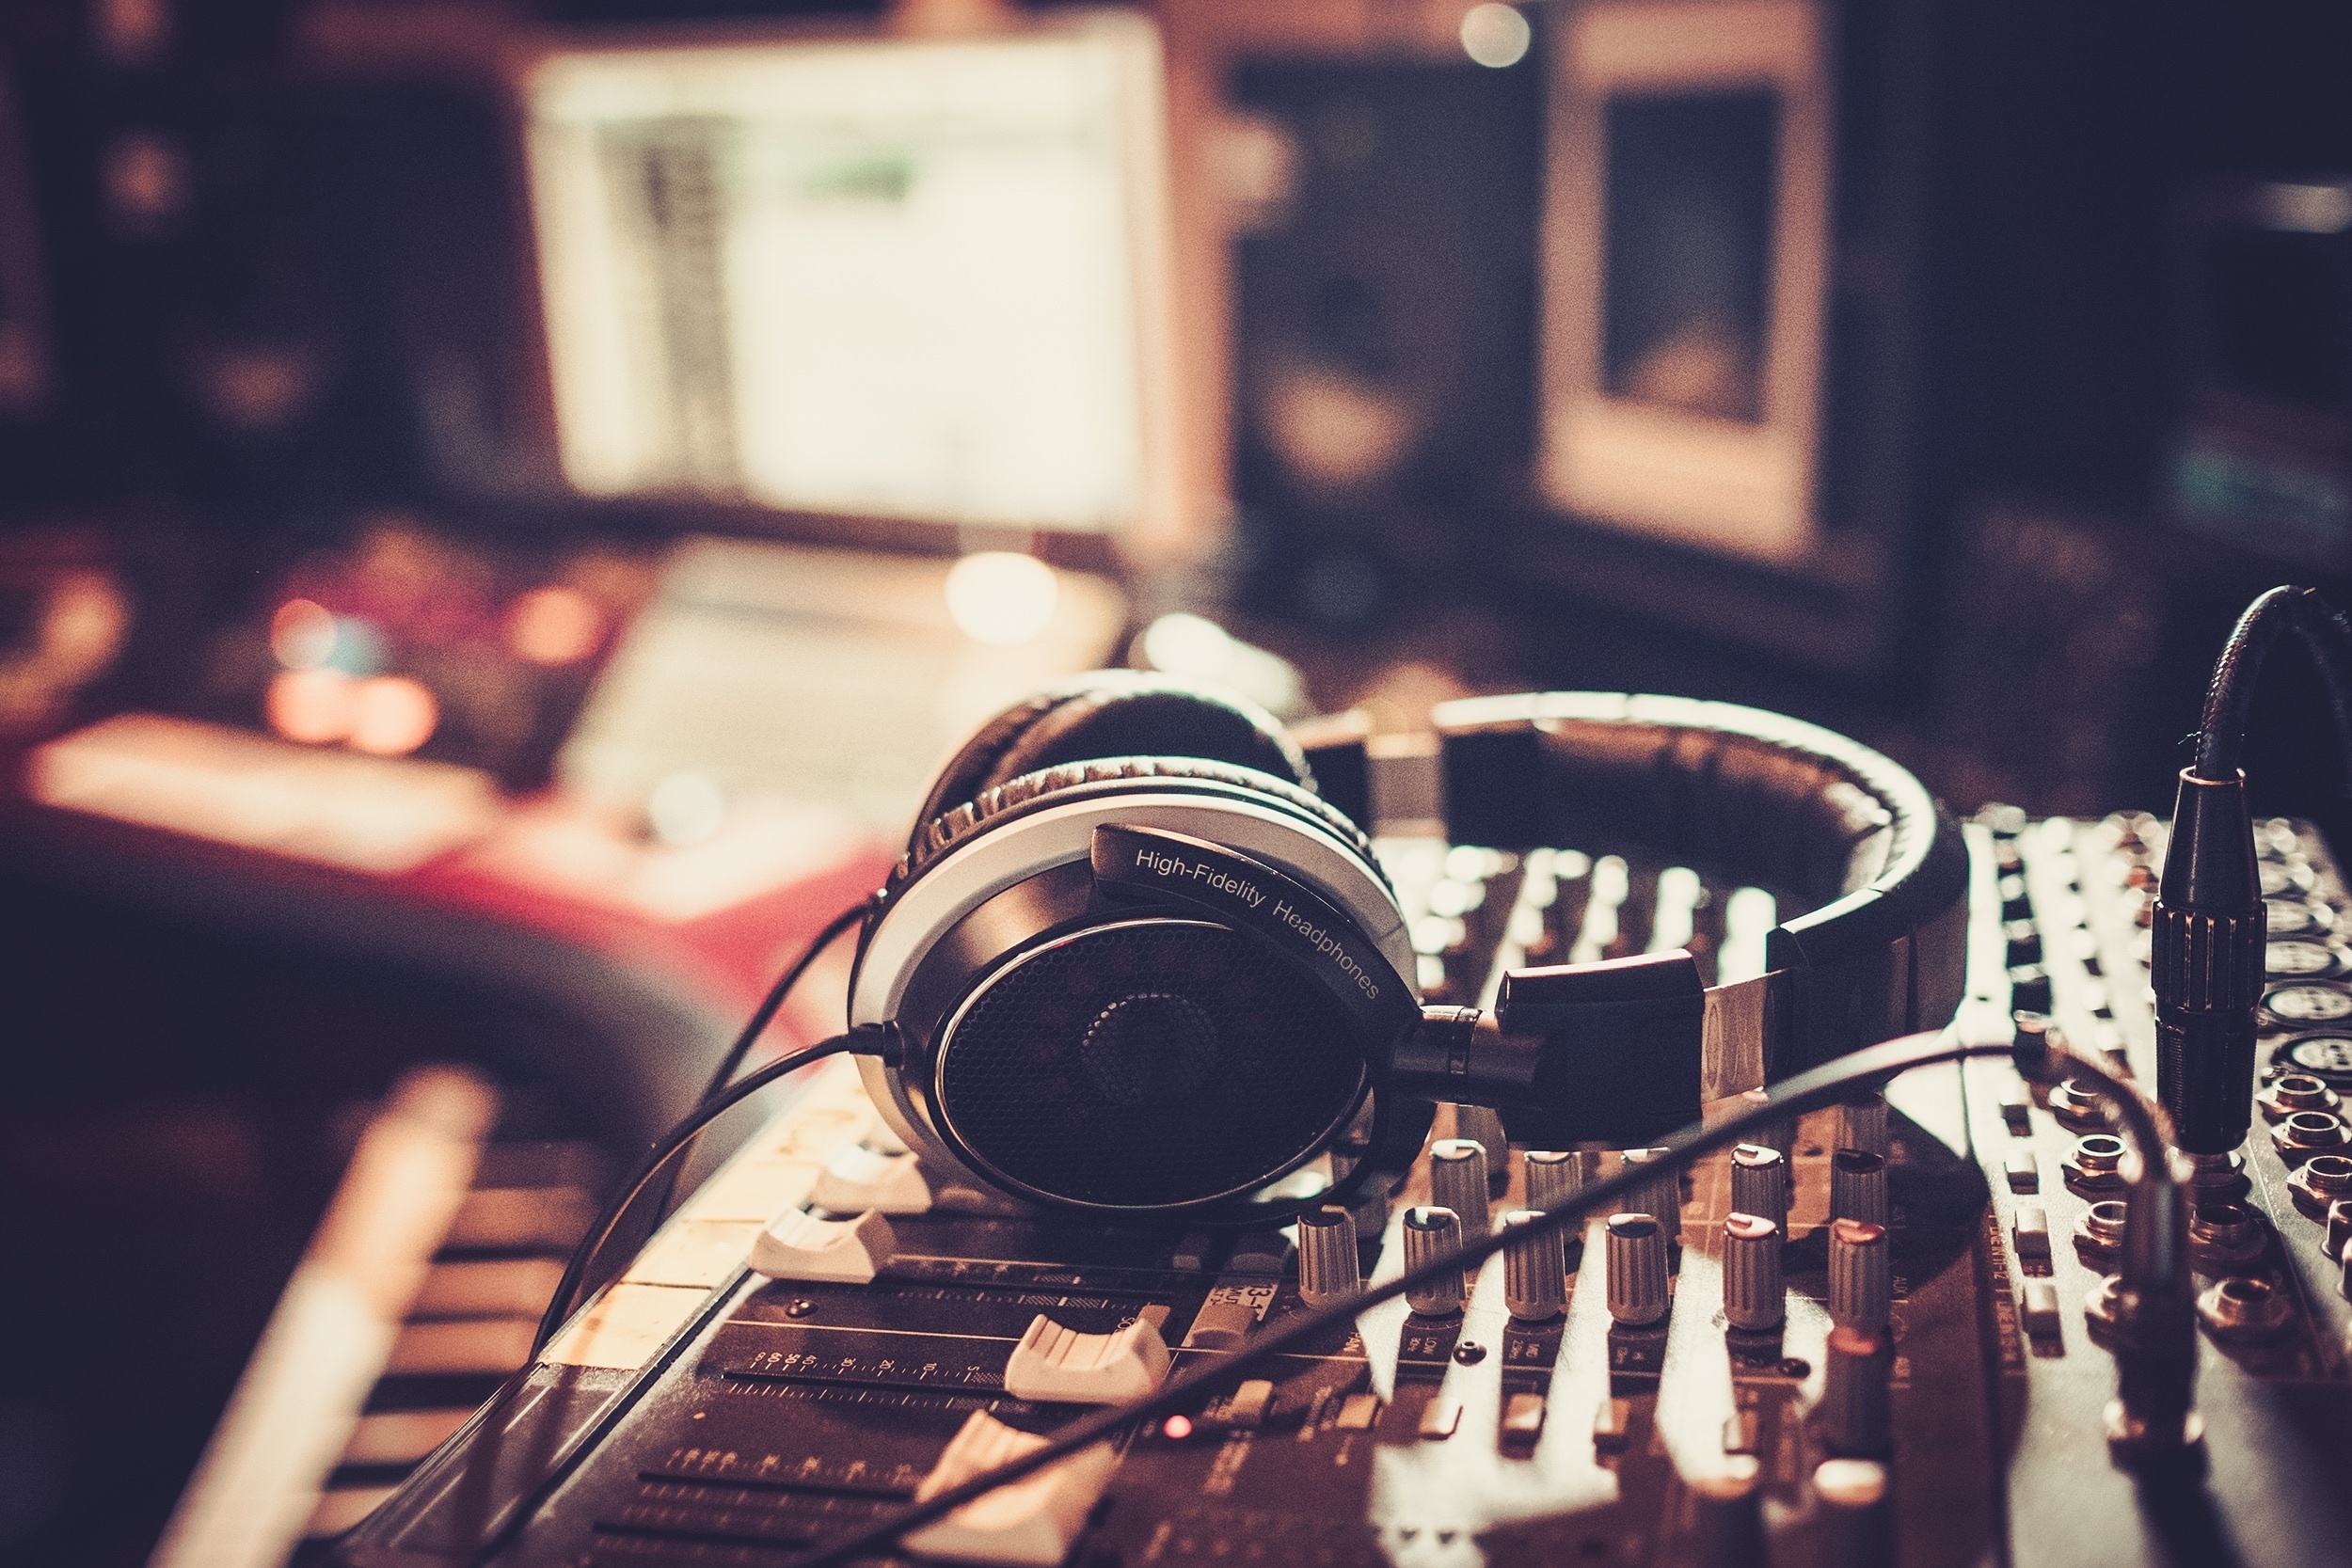 headphones in music studio with computer in background